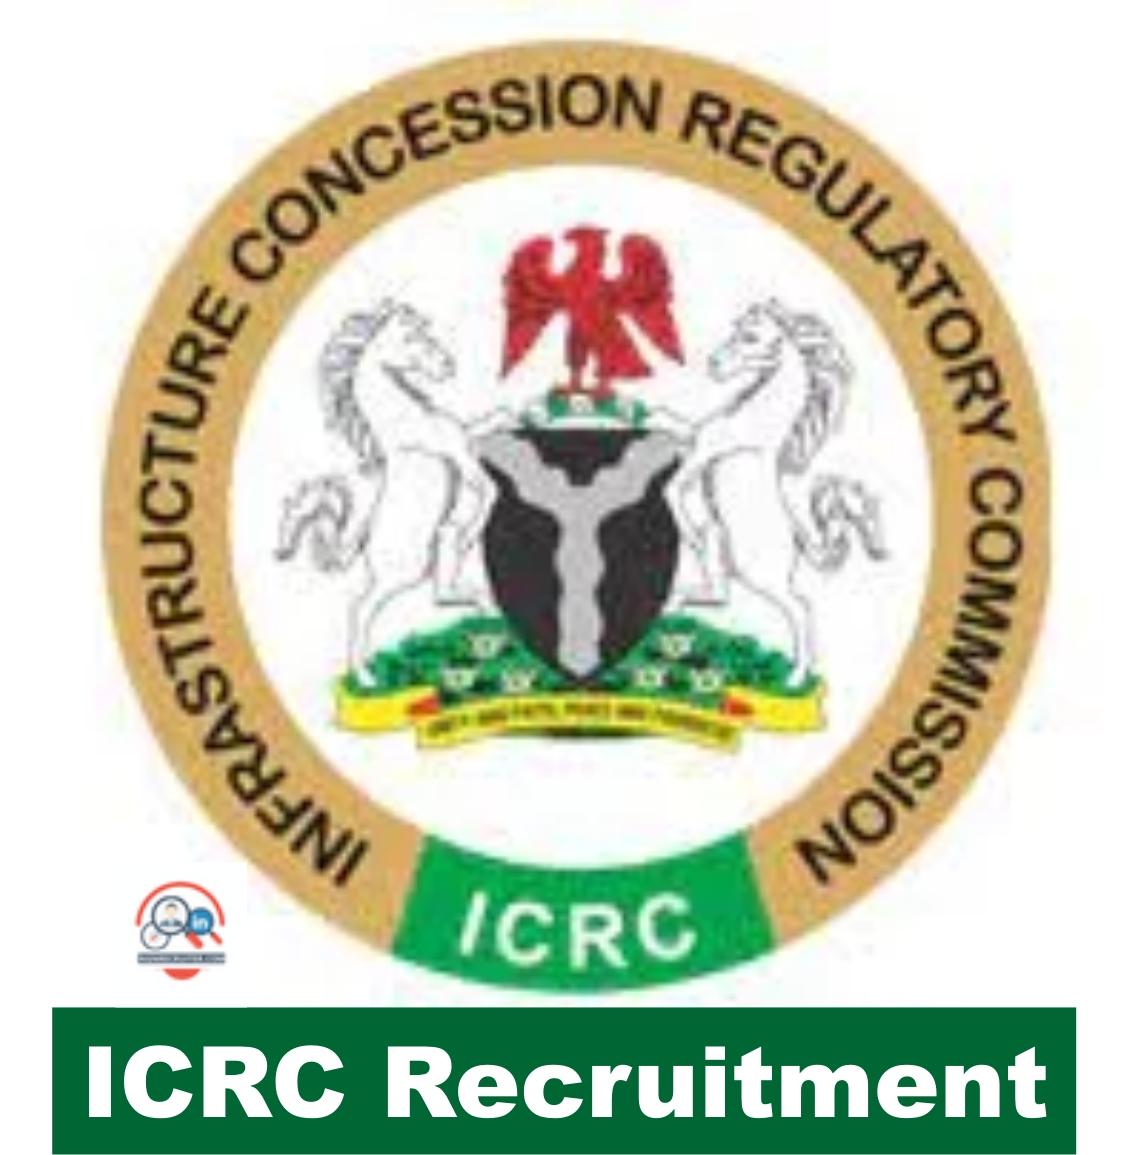 ICRC RECRUITMENT